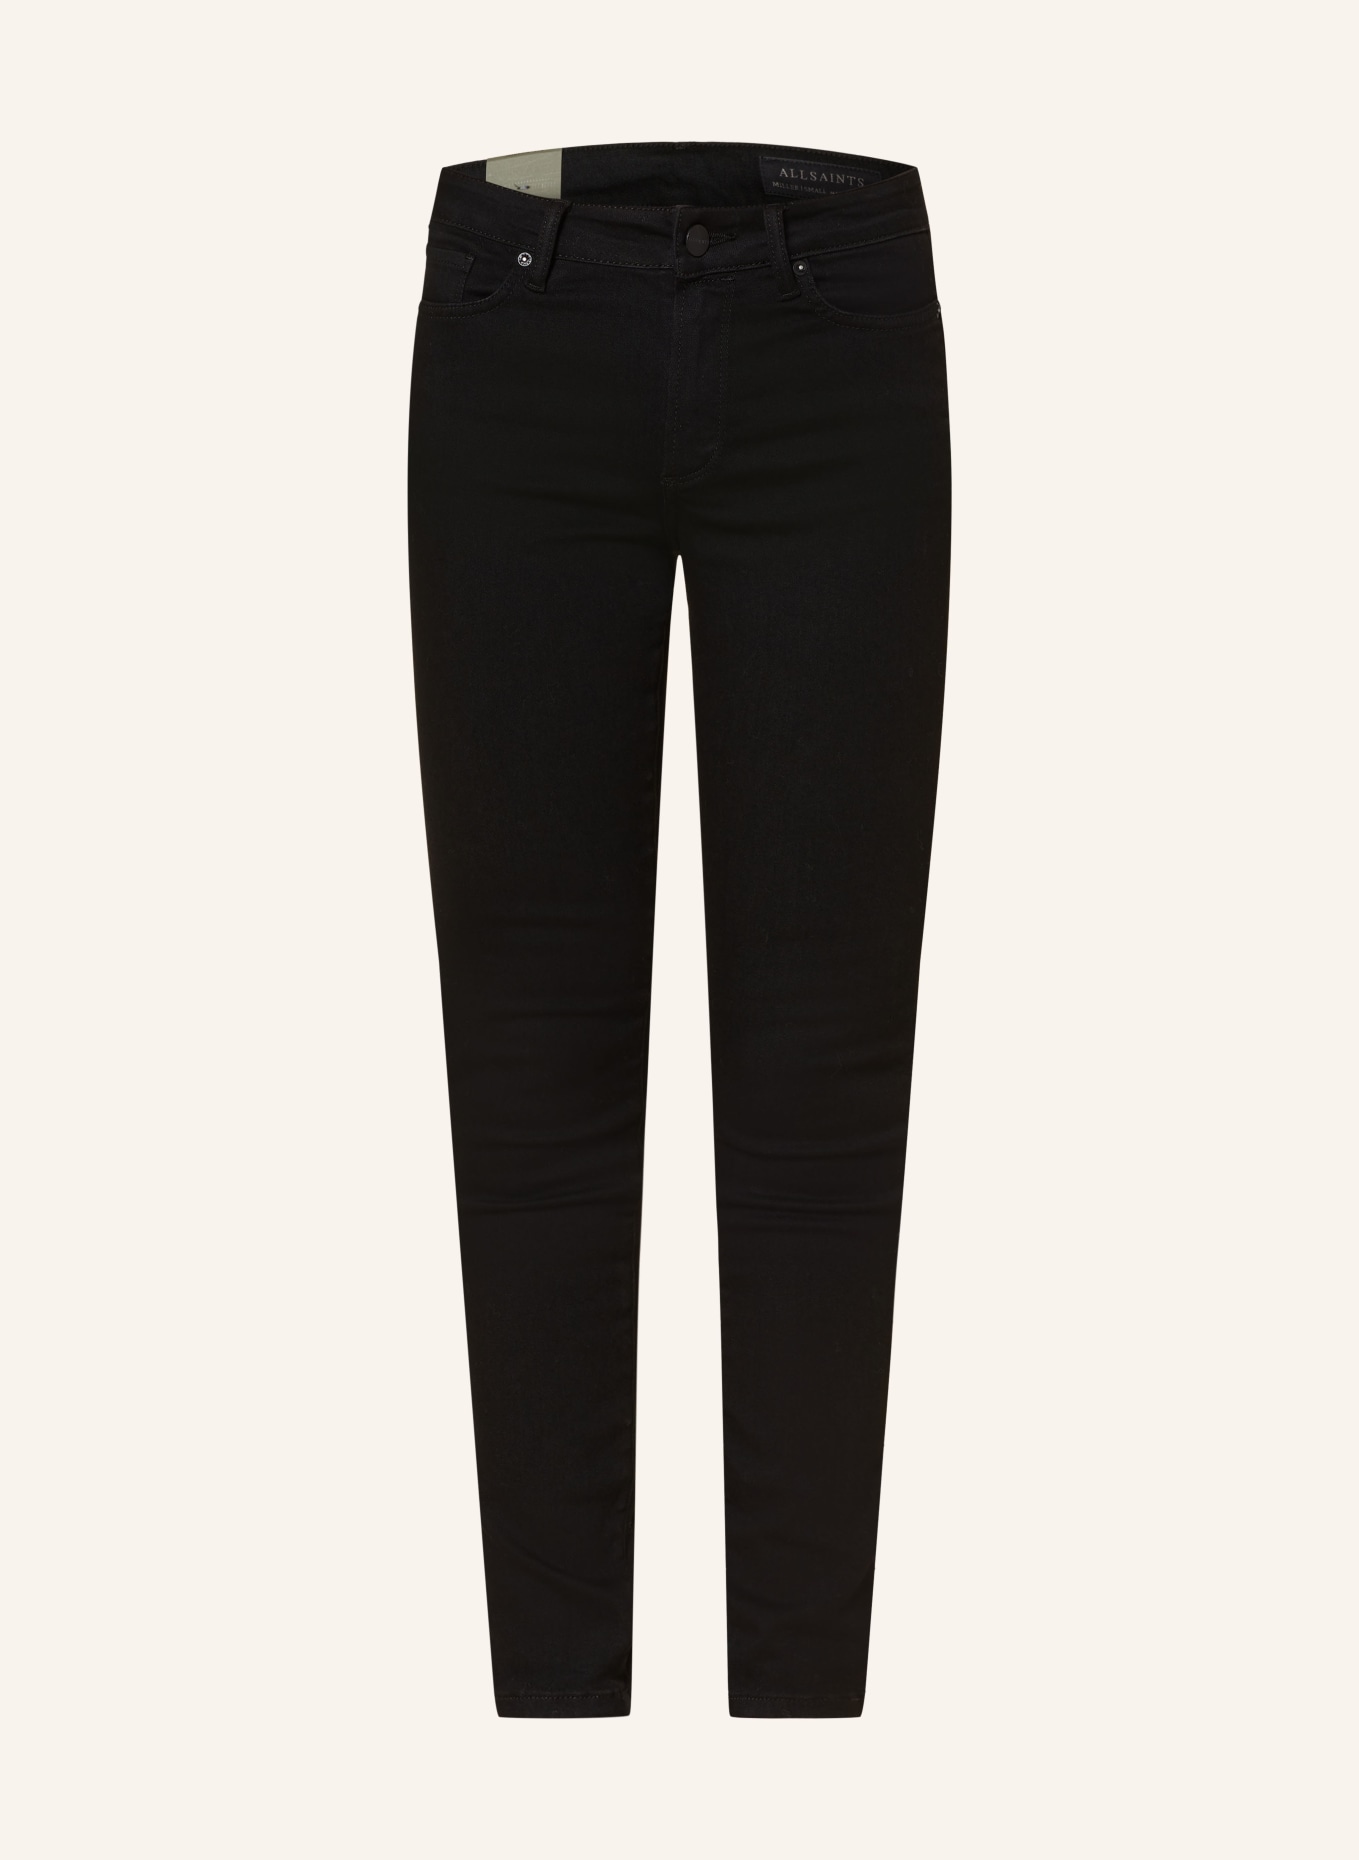 ALLSAINTS Skinny jeans MILLER SIZE ME, Color: BLACK (Image 1)